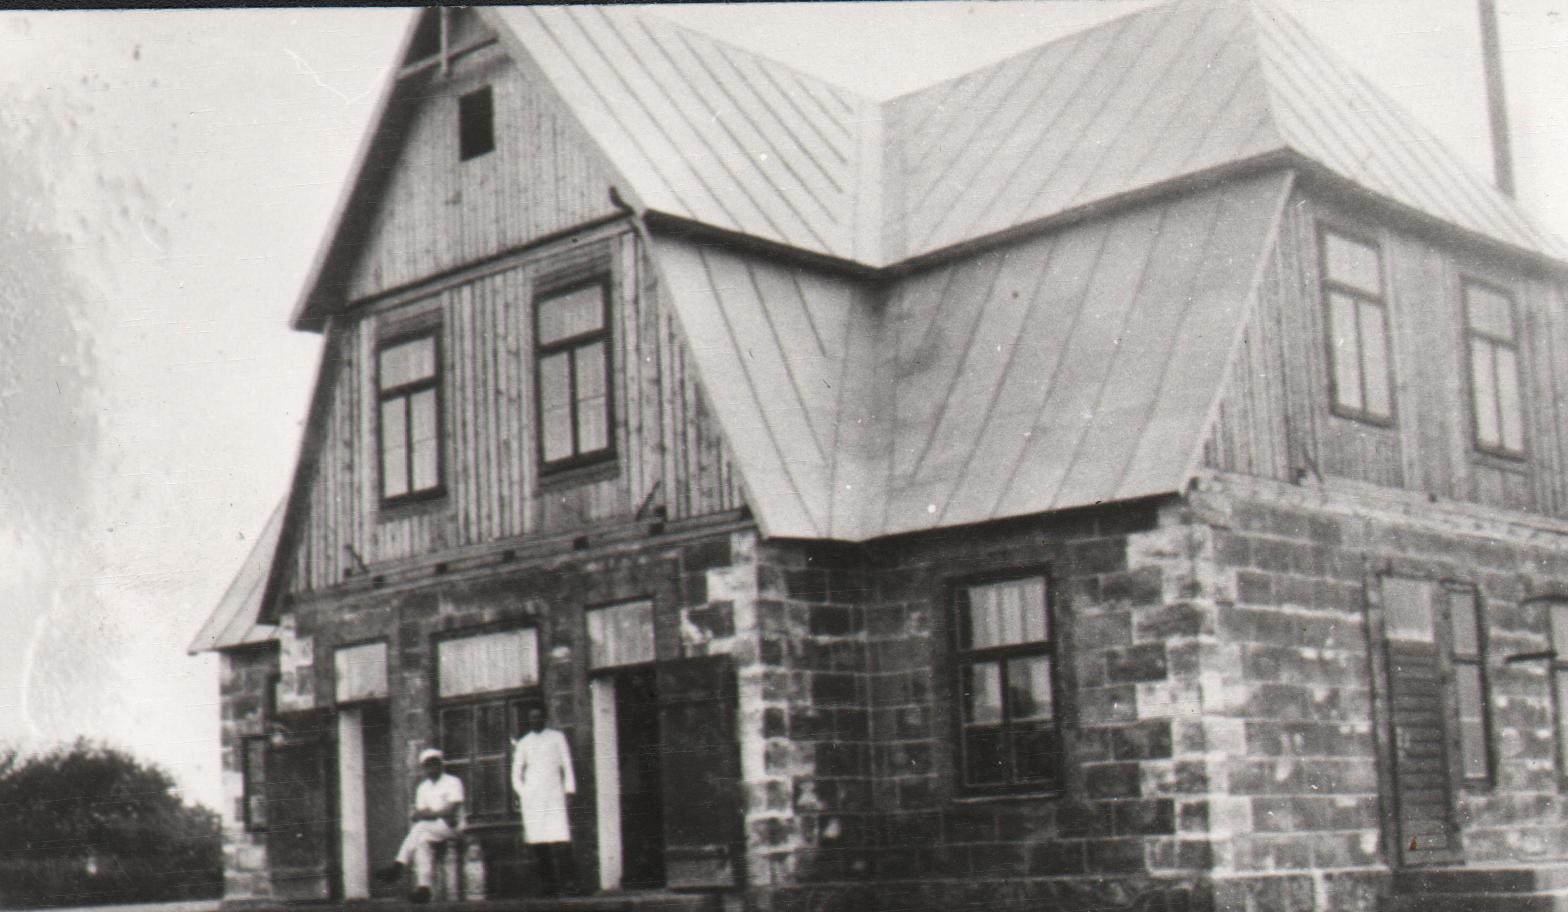 Mõisaküla ÜPT building. Meier Helmar Juurik. 1932.